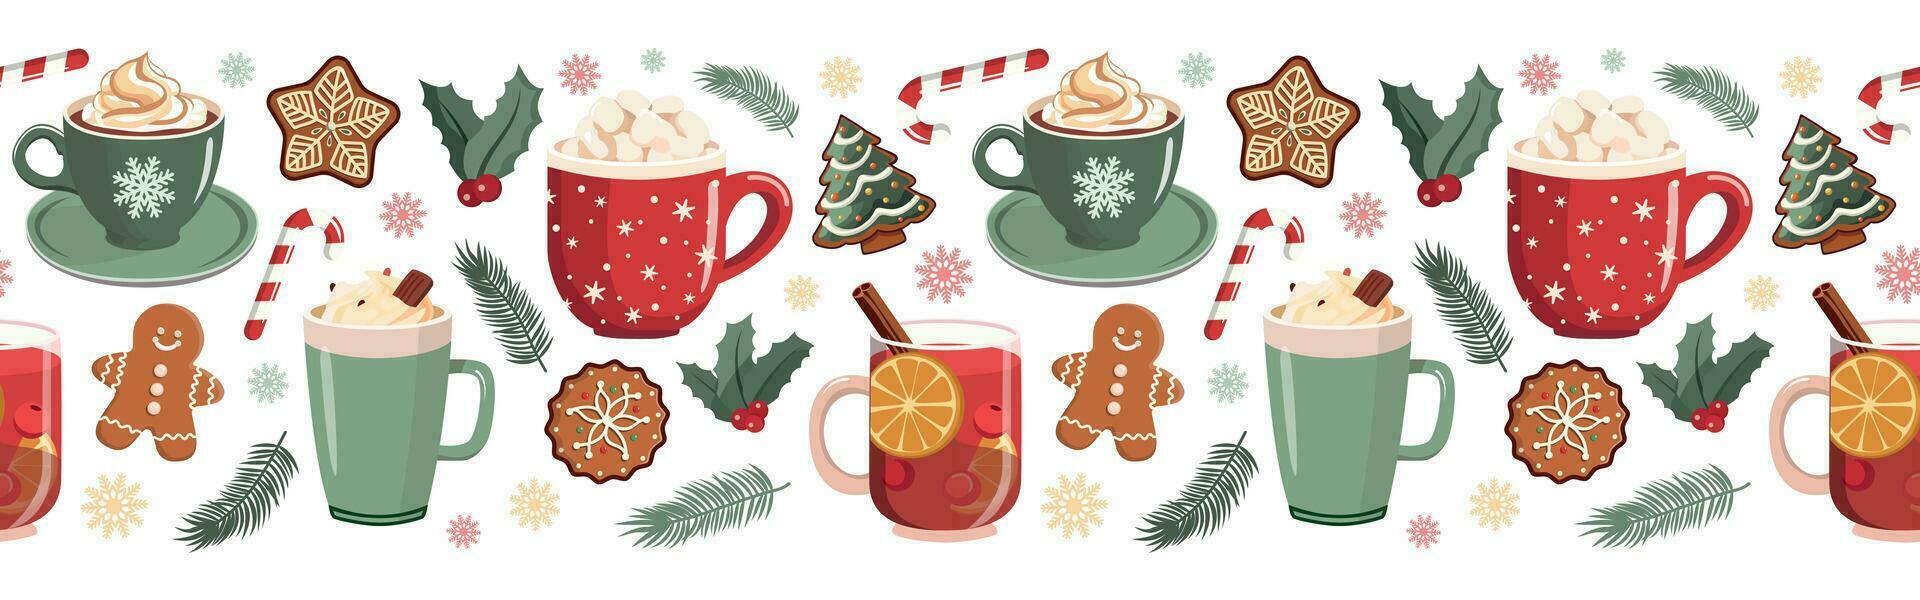 Kerstmis heet drankje, peperkoeken naadloos horizontaal grens met koffie, cacao, overwogen wijn. winter heet drank. seizoen grafisch. schattig Kerstmis en nieuw jaar illustratie vector